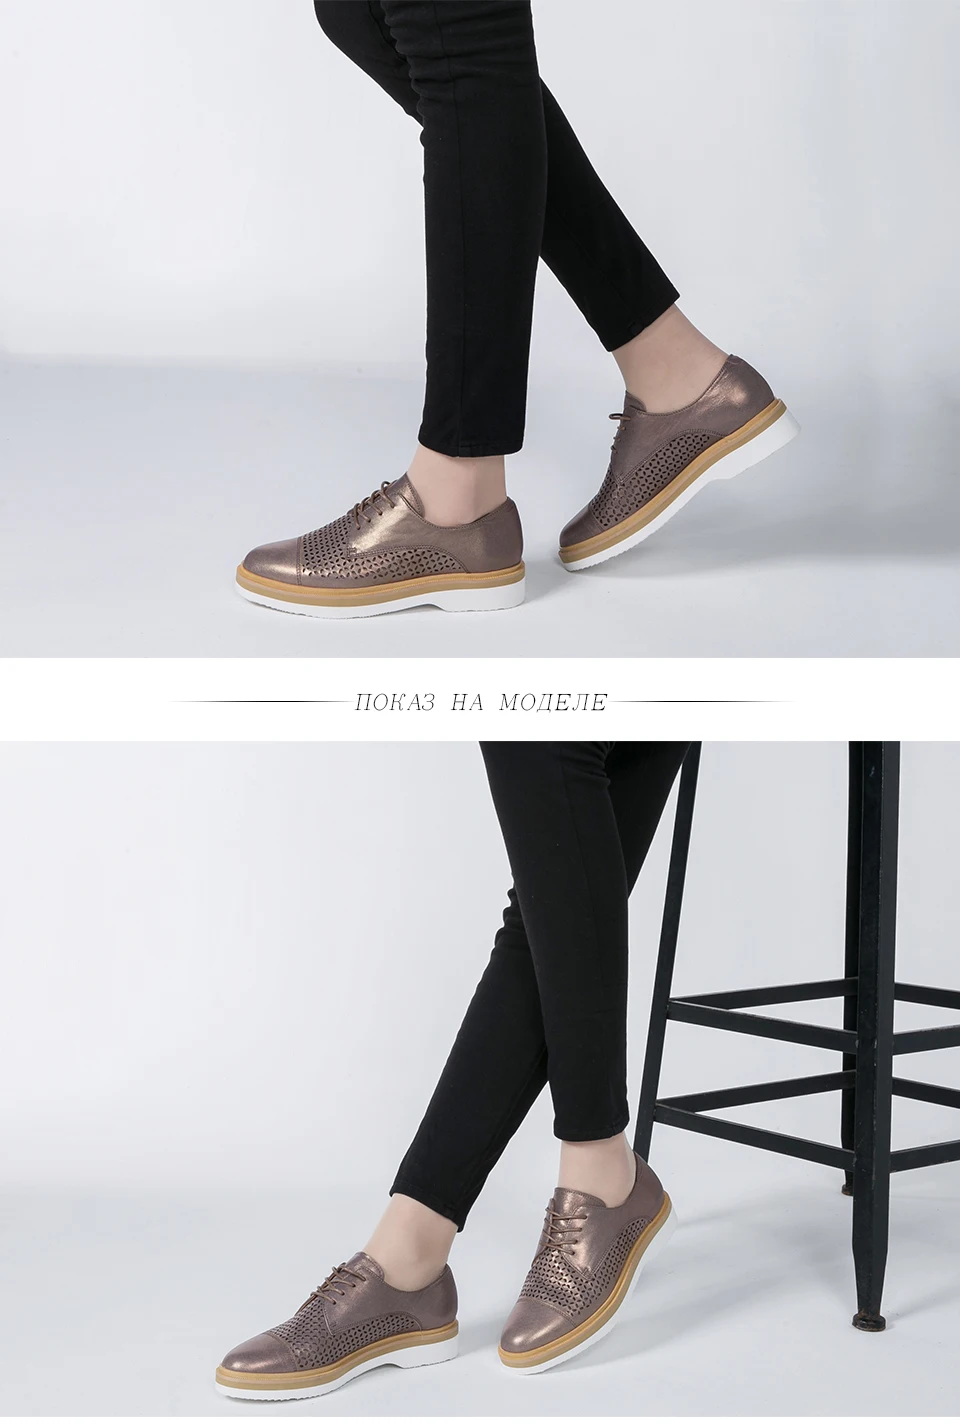 BASSIRIANA/Женская обувь на плоской подошве из натуральной кожи, Классическая обувь из натуральной кожи с круглым носком, на шнуровке, повседневная женская обувь весна-лето